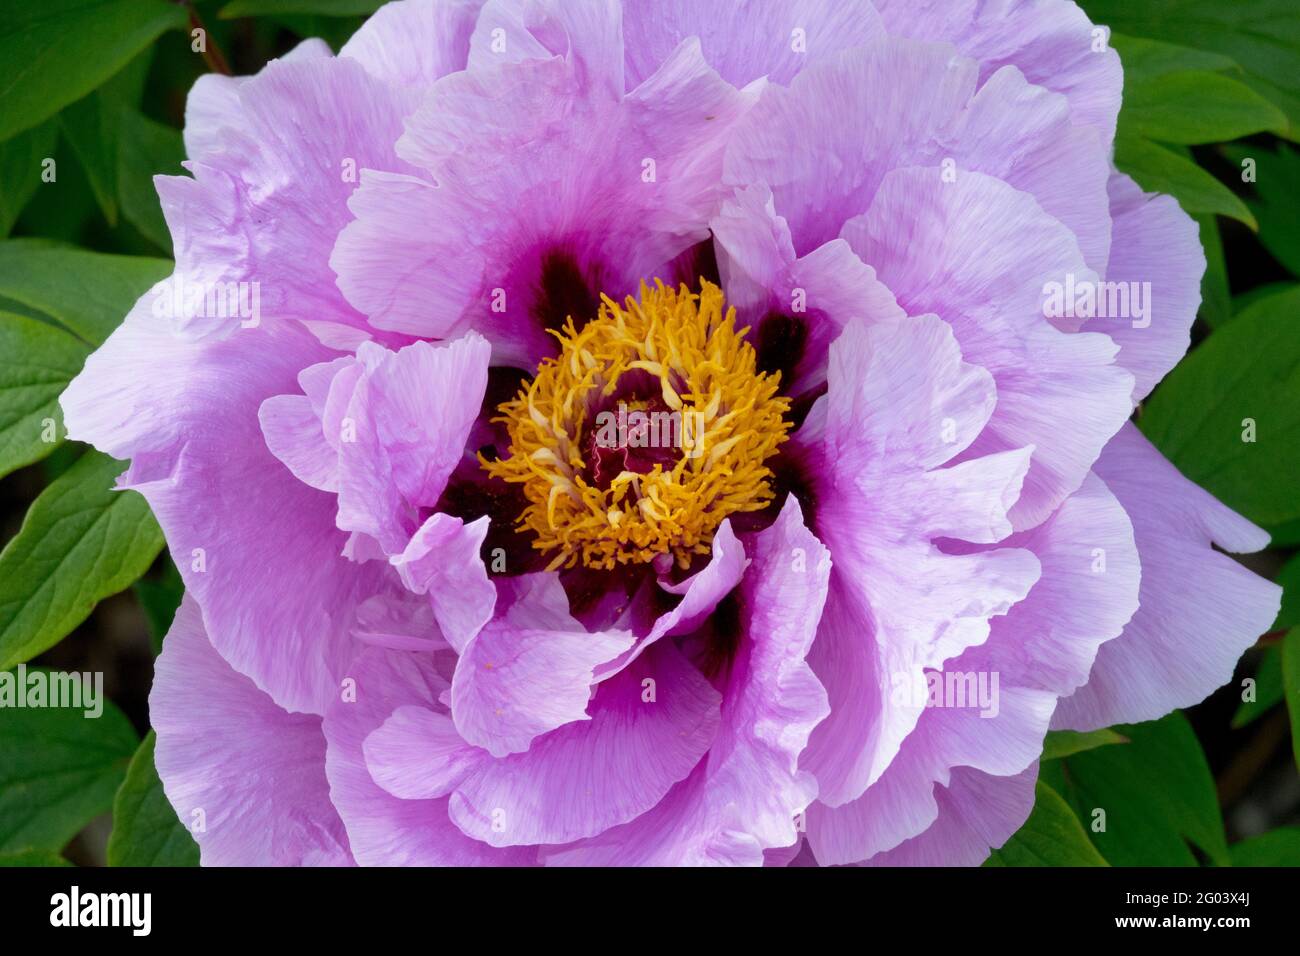 Paeonia Hana kisoi fiore di pony viola Paeonia x albero suffruticosa fioritura dei fiori di peonia Foto Stock